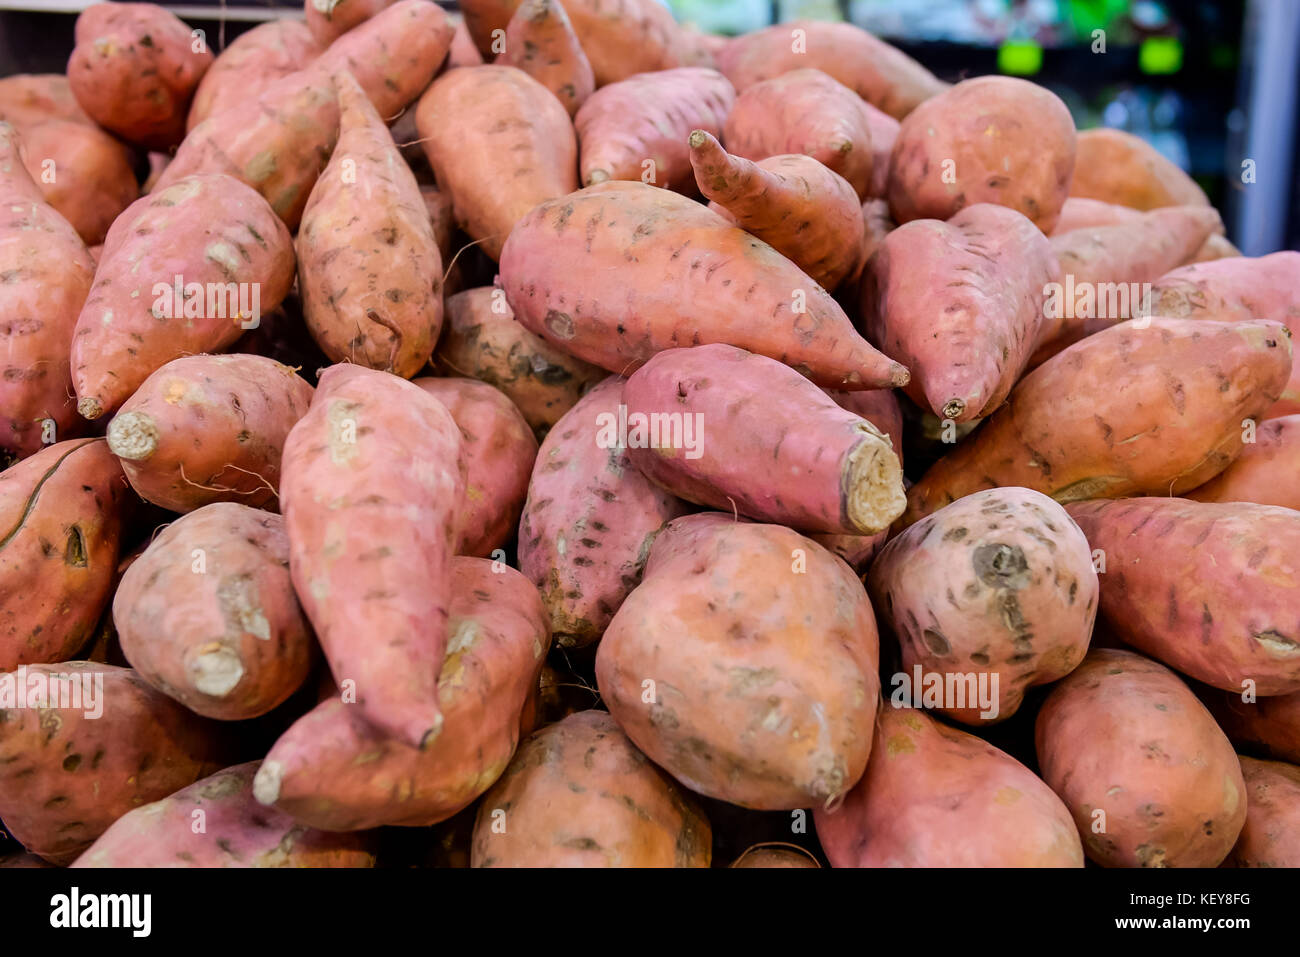 In der Nähe von frischem Süßkartoffel mit root am Bauernmarkt als Lebensmittel Hintergrund. Organische, gesunde, vegetarische Ernährung Food Konzept. Selektive konzentrieren. Stockfoto